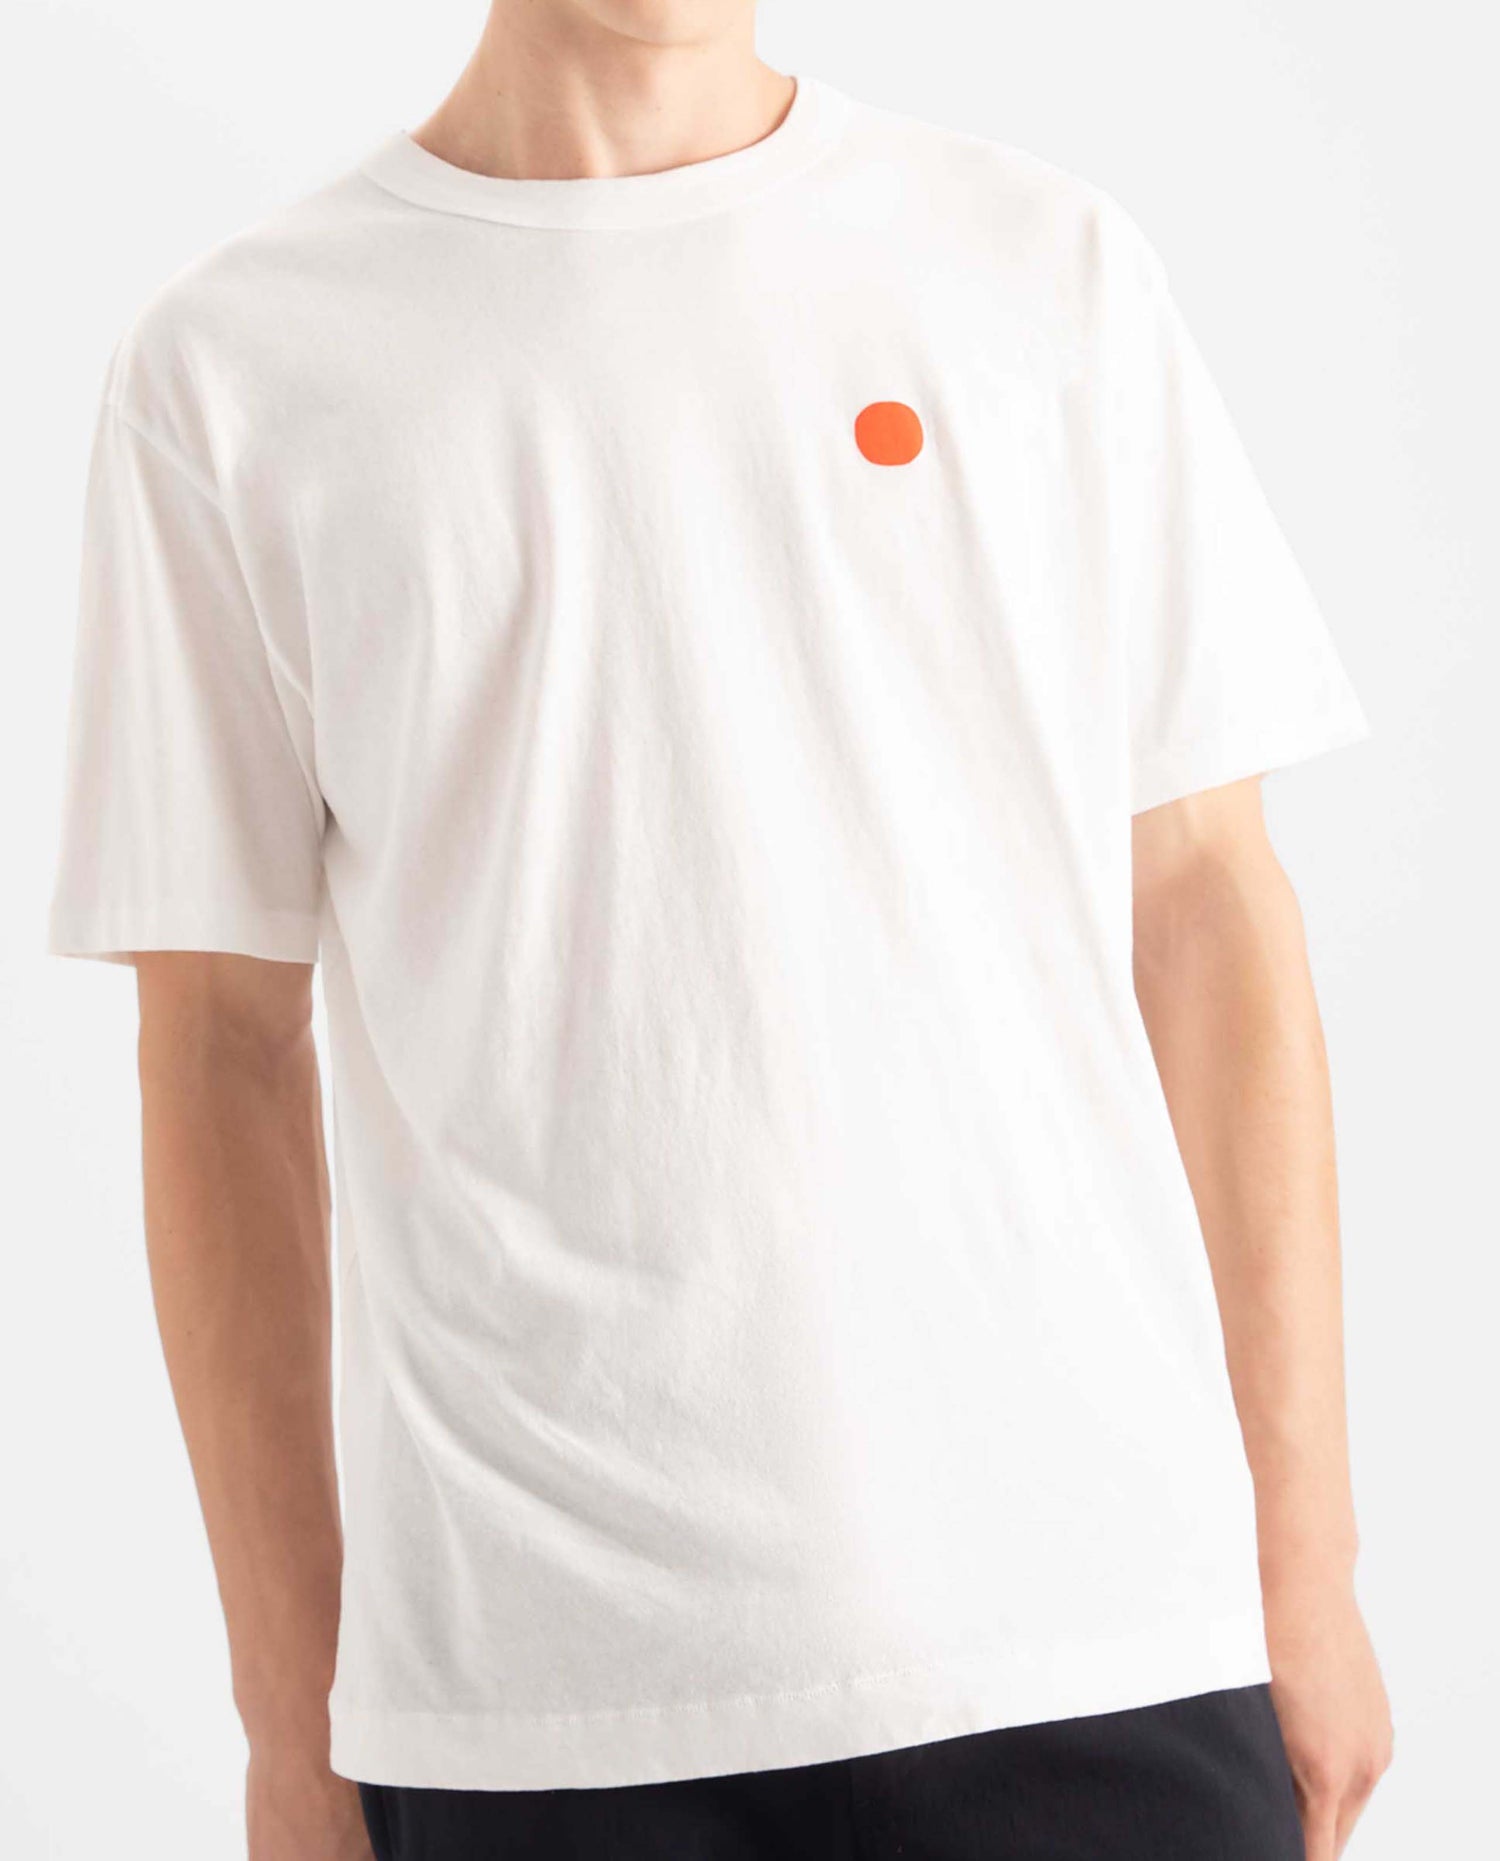 marché commun loreak mendian homme t-shirt coton biologique dot blanc